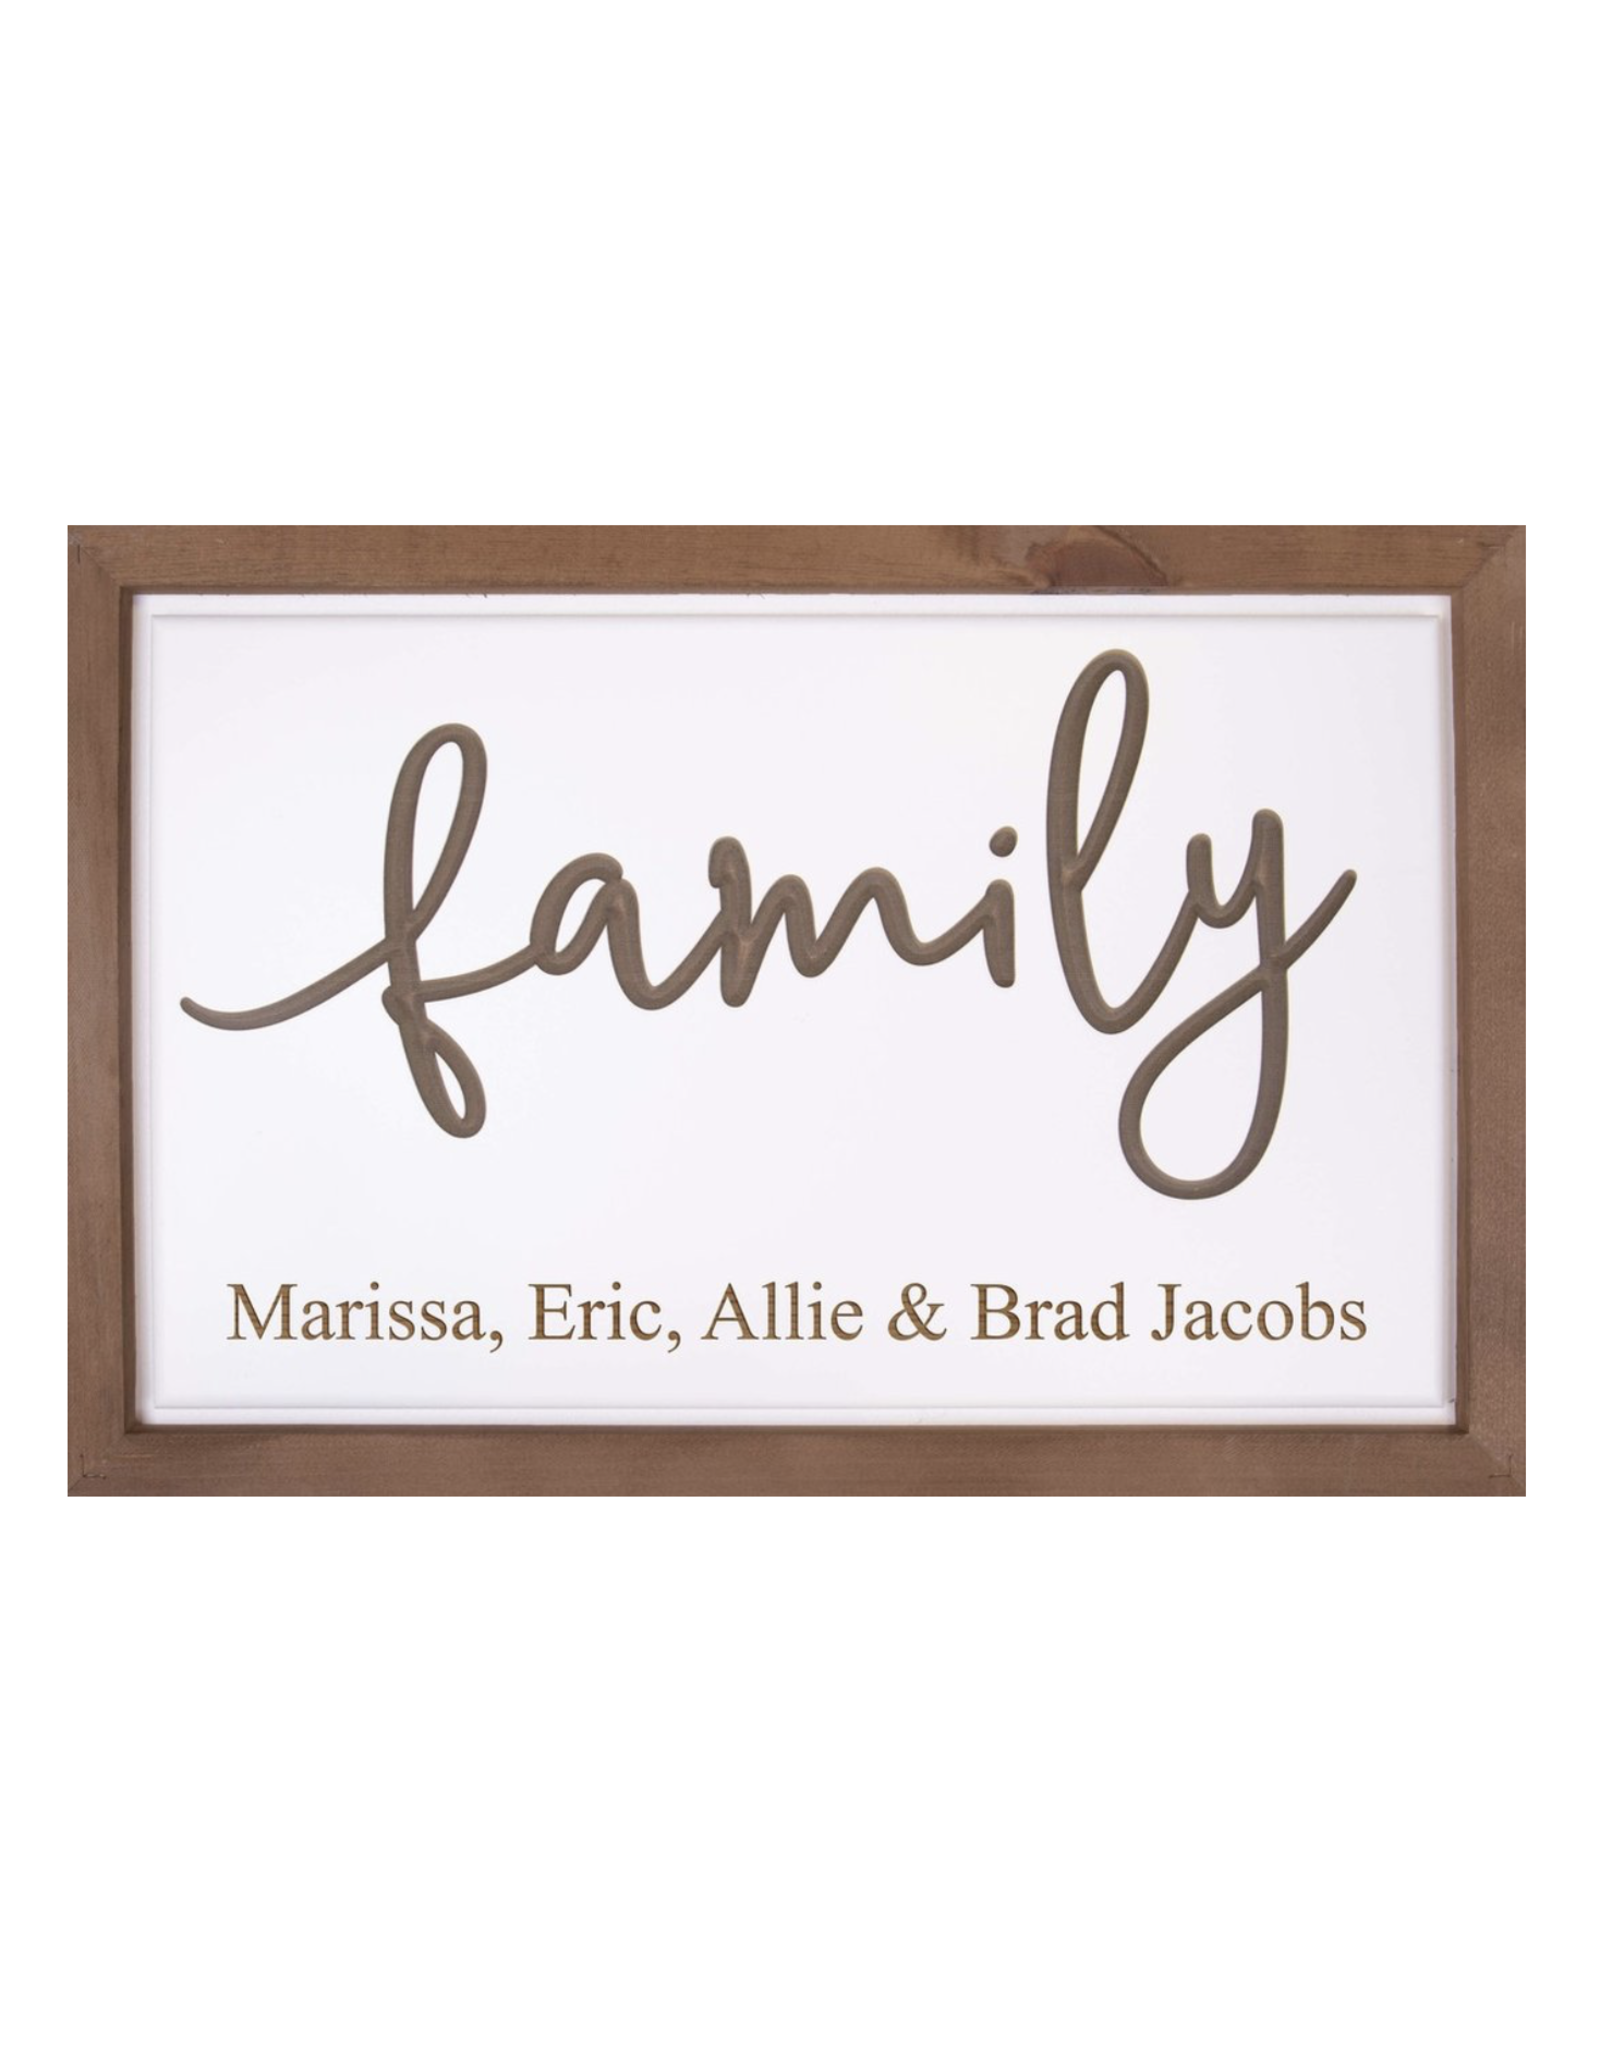 Framed Family Sign Includes Laser Engraving